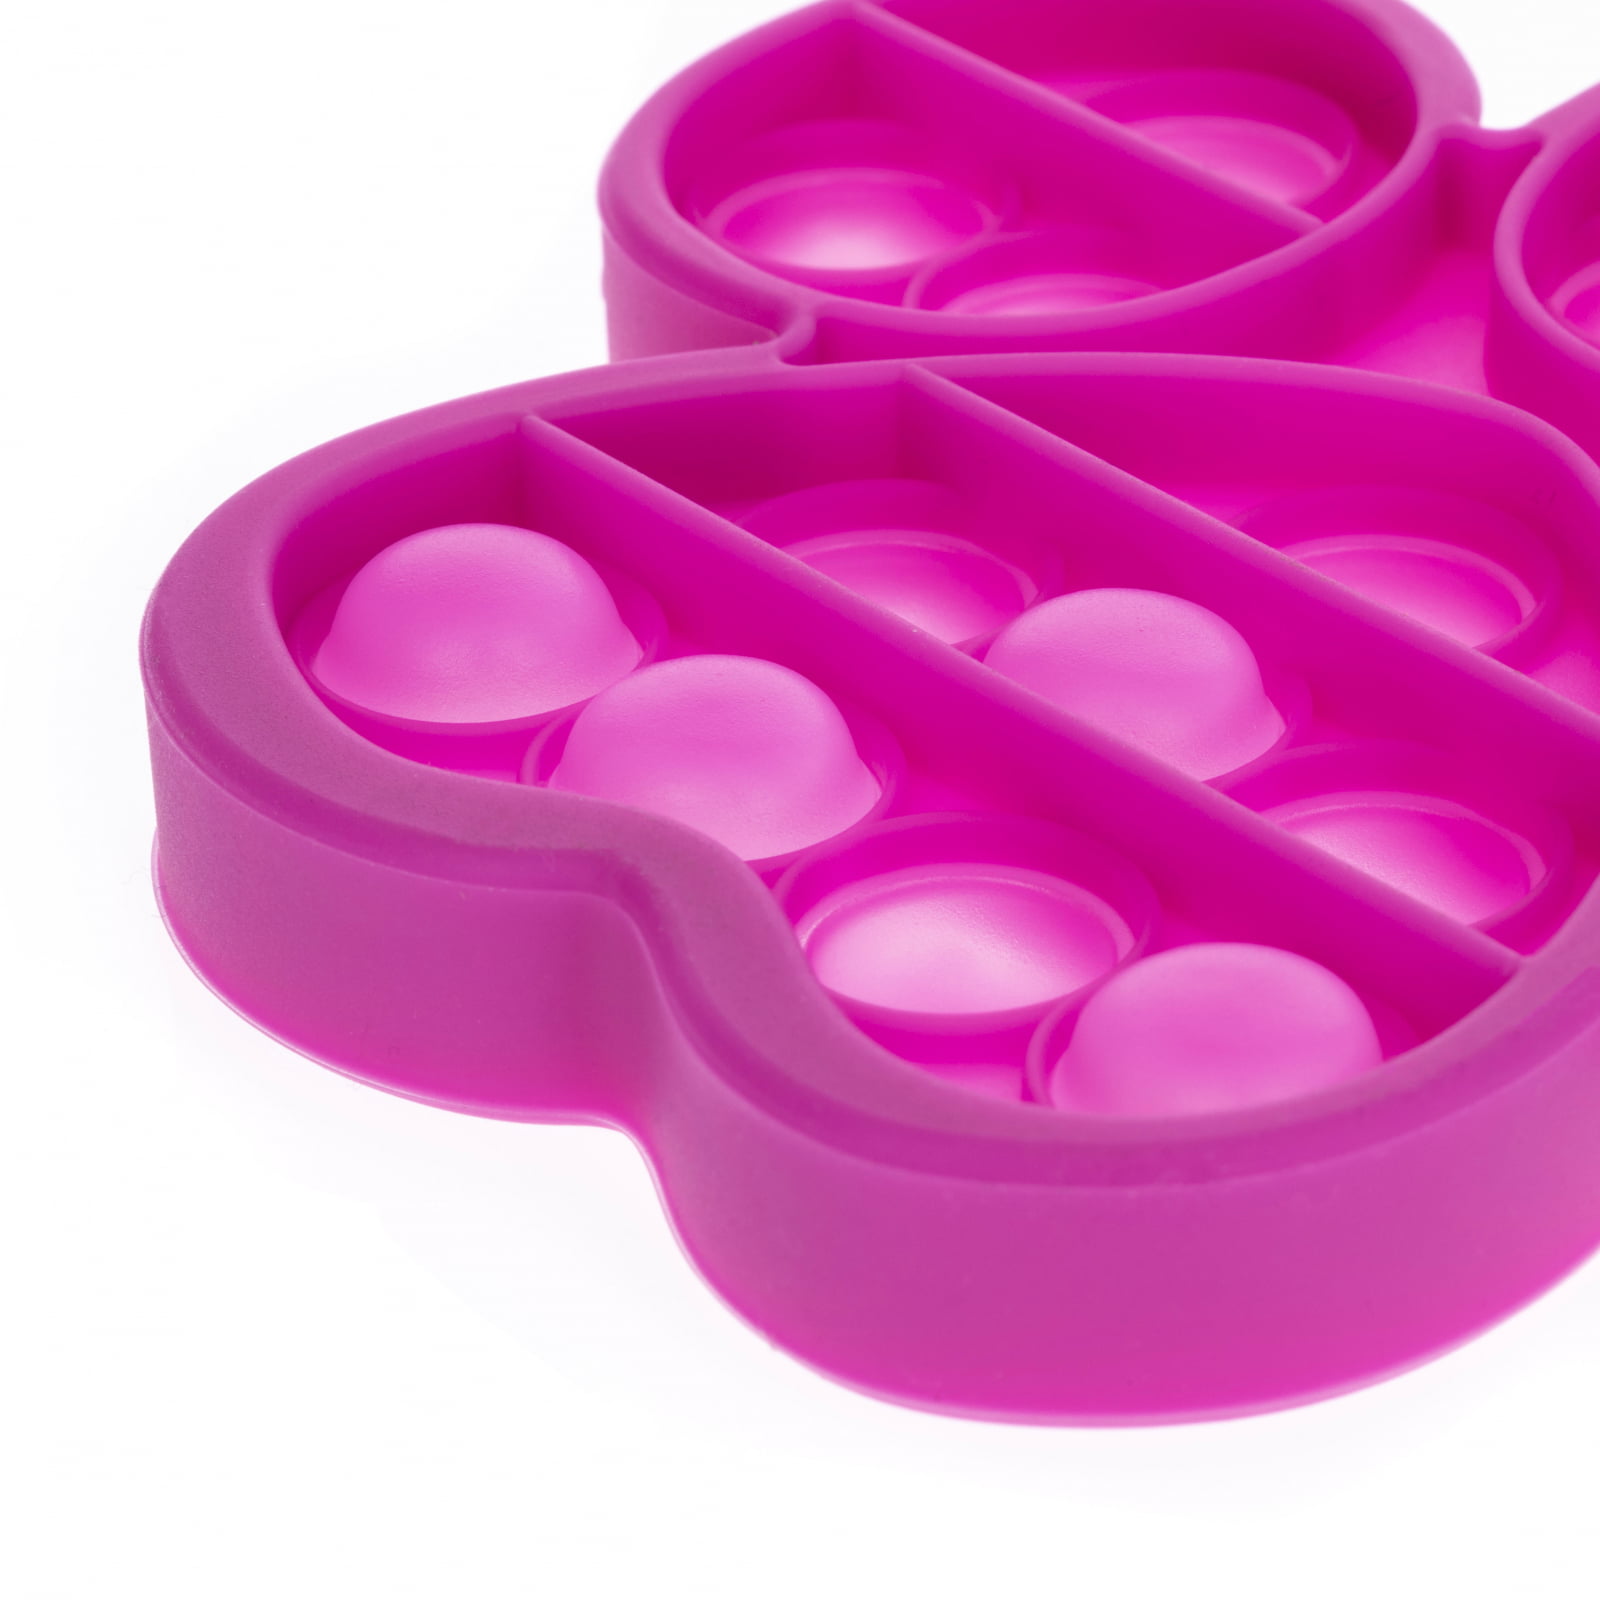 Pink Paw Patrol Push Pop It Sensory Fidget Toy Stress Relief for Kids Keychain 